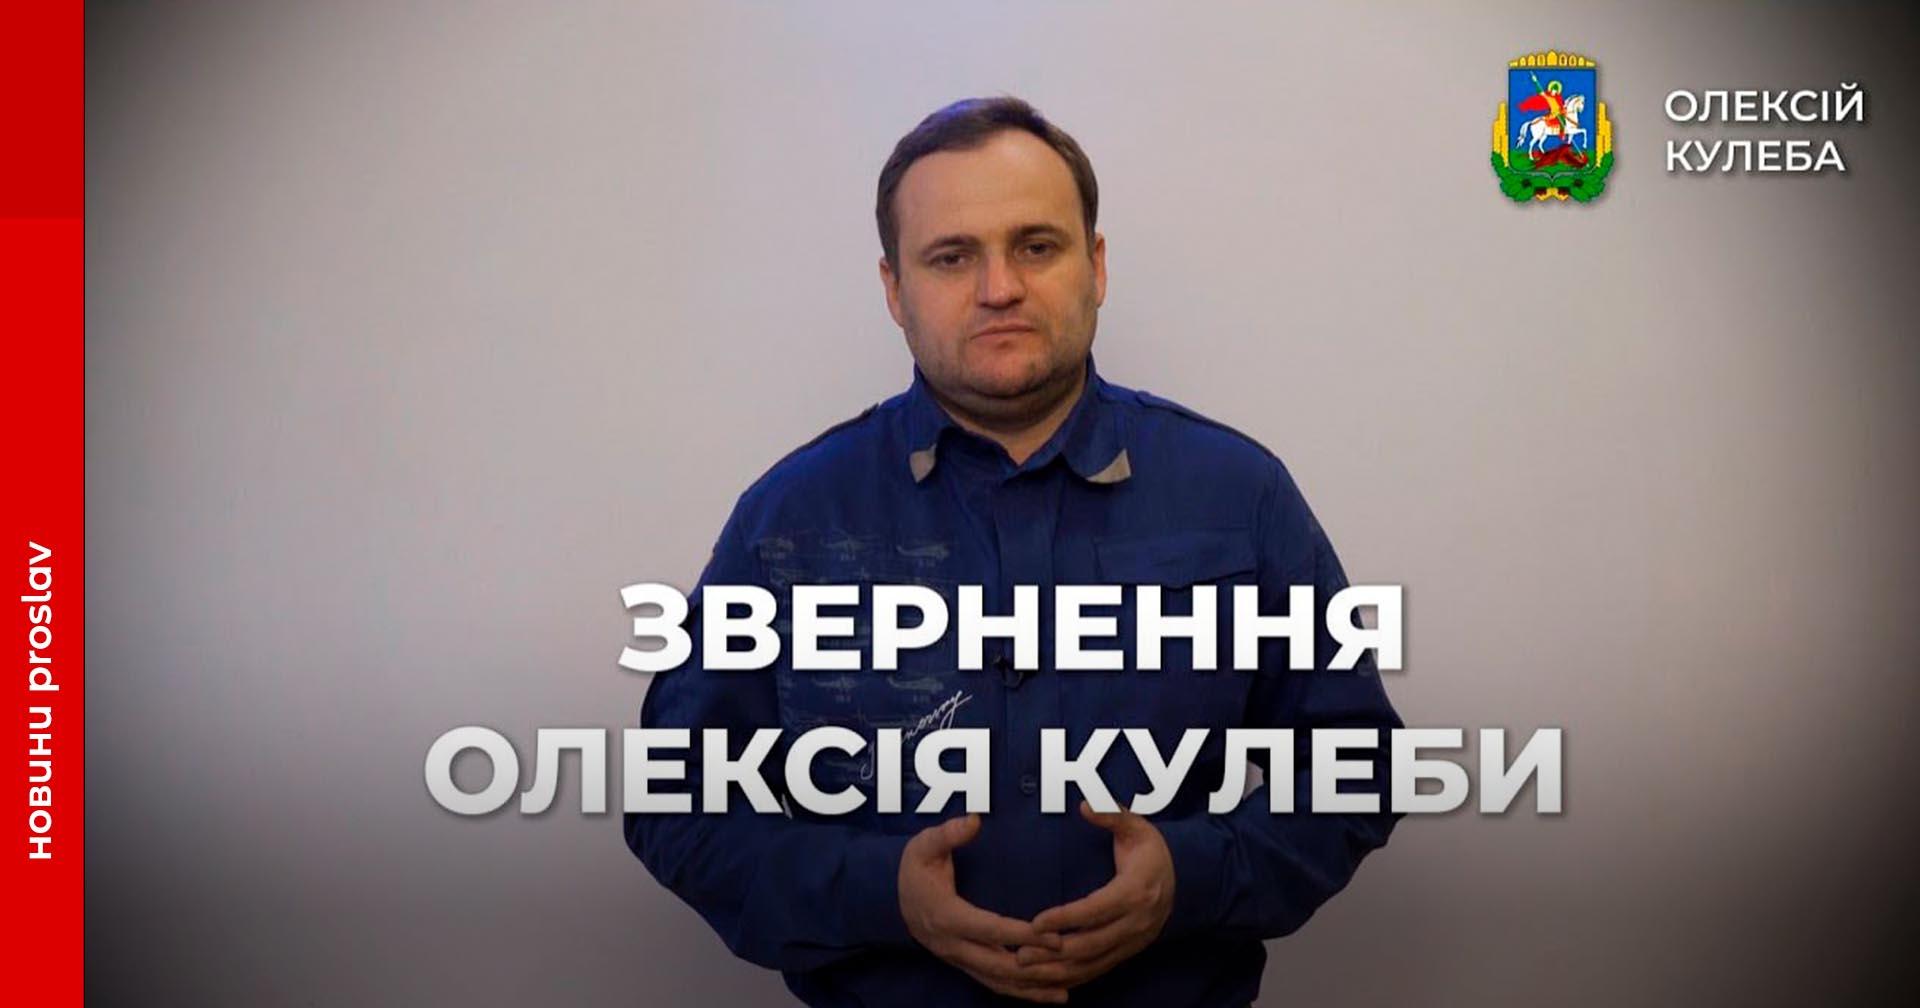 В Київській області можливі планові відключення електроенергії – Кулеба